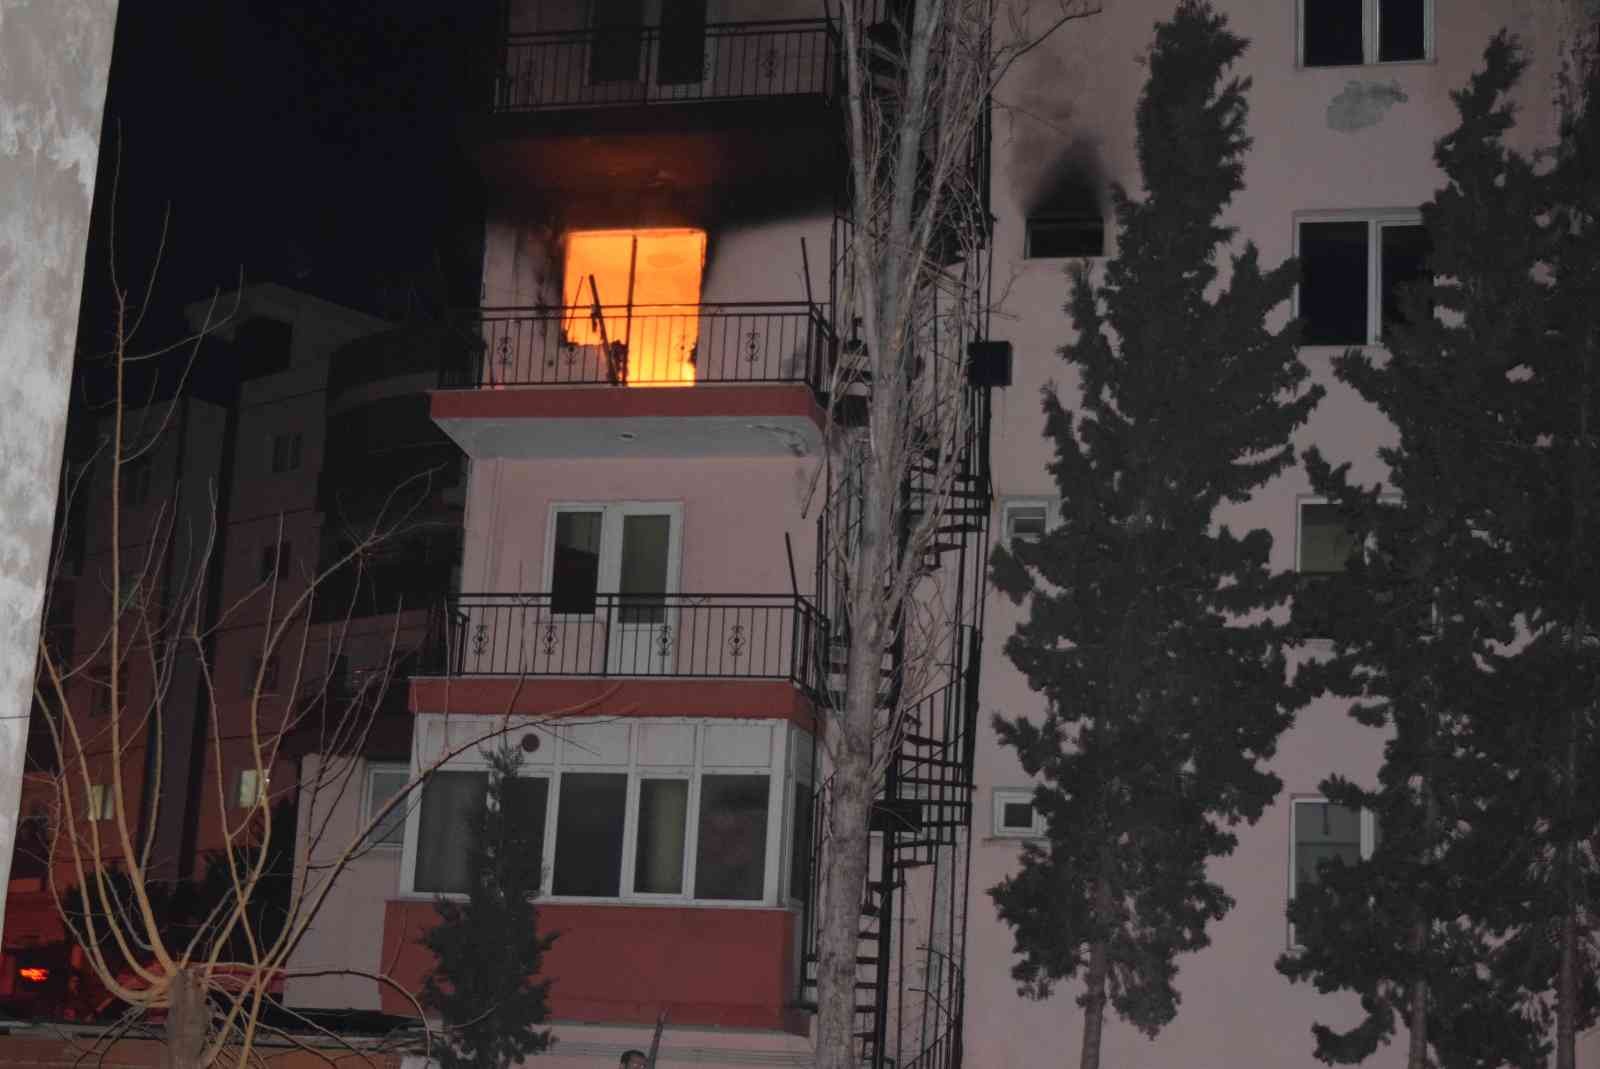 İzmir’de TÜGVA’ya ait binada yangın çıktı #izmir